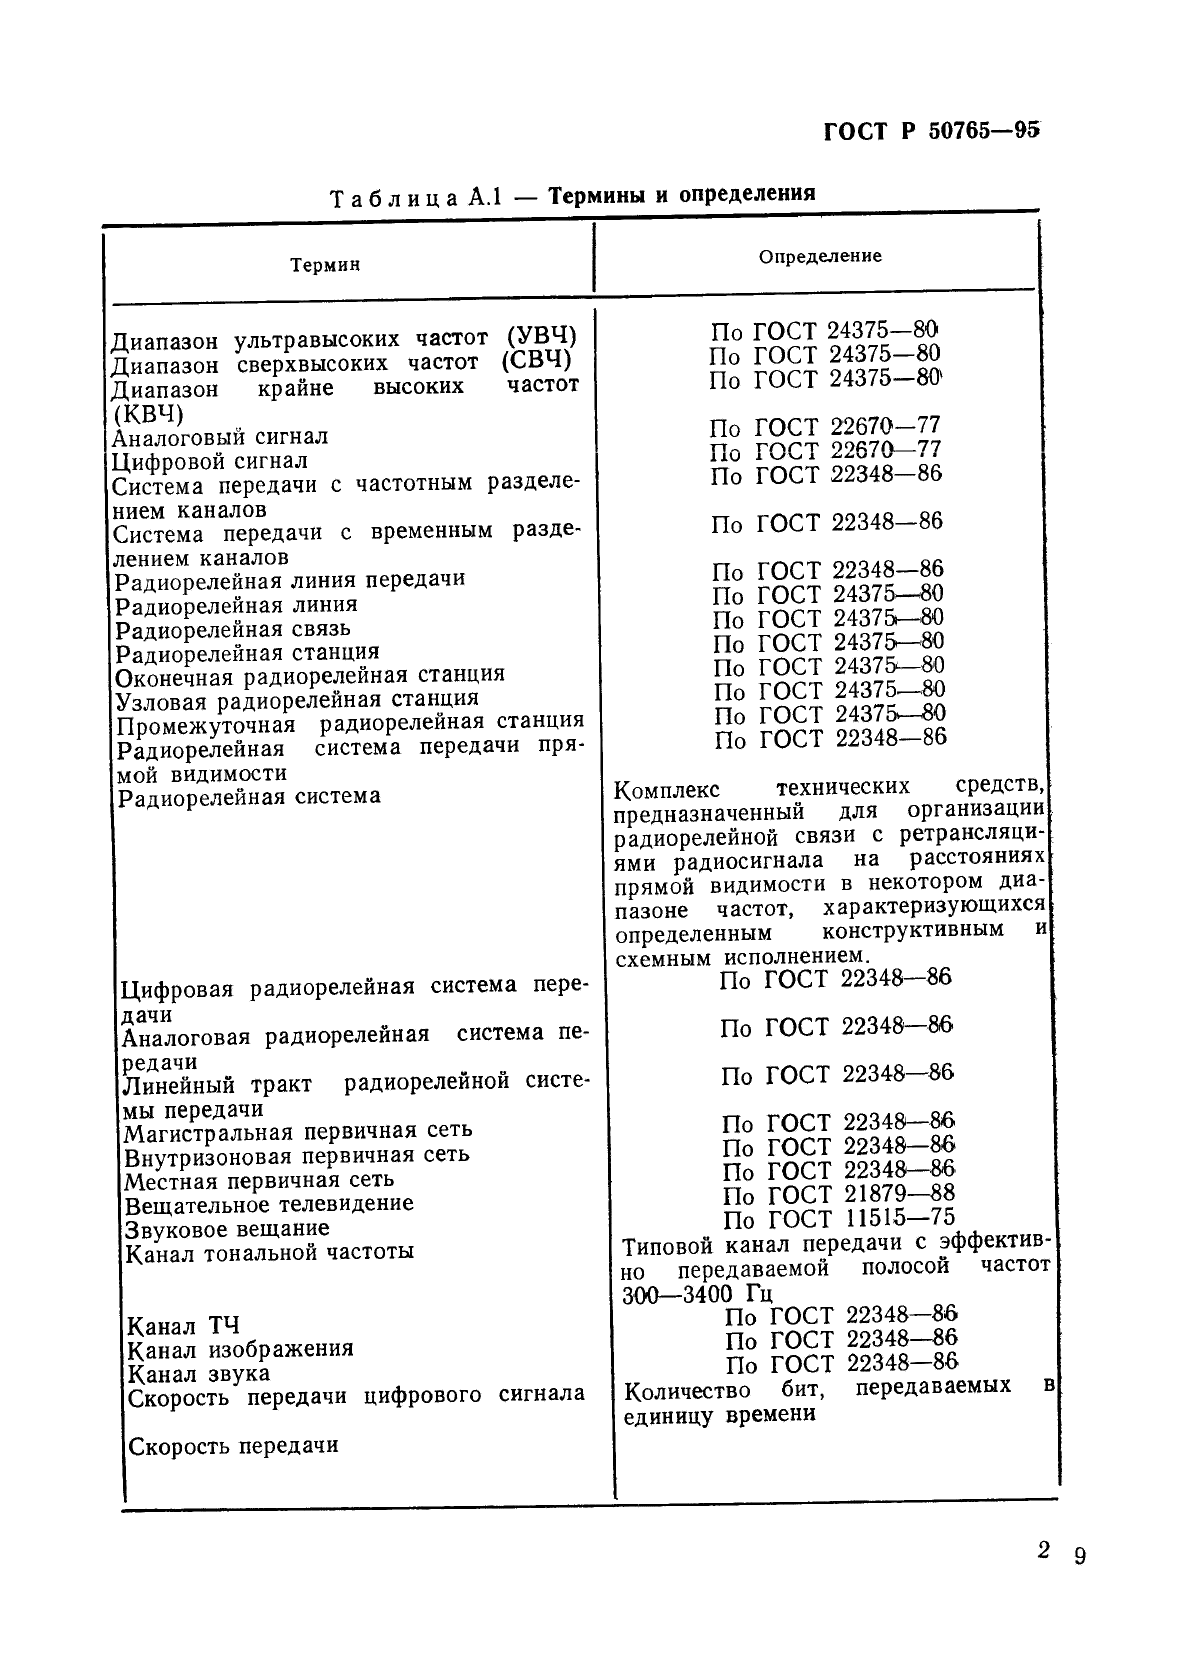 ГОСТ Р 50765-95 Аппаратура радиорелейная. Классификация. Основные параметры цепей стыка (фото 32 из 62)